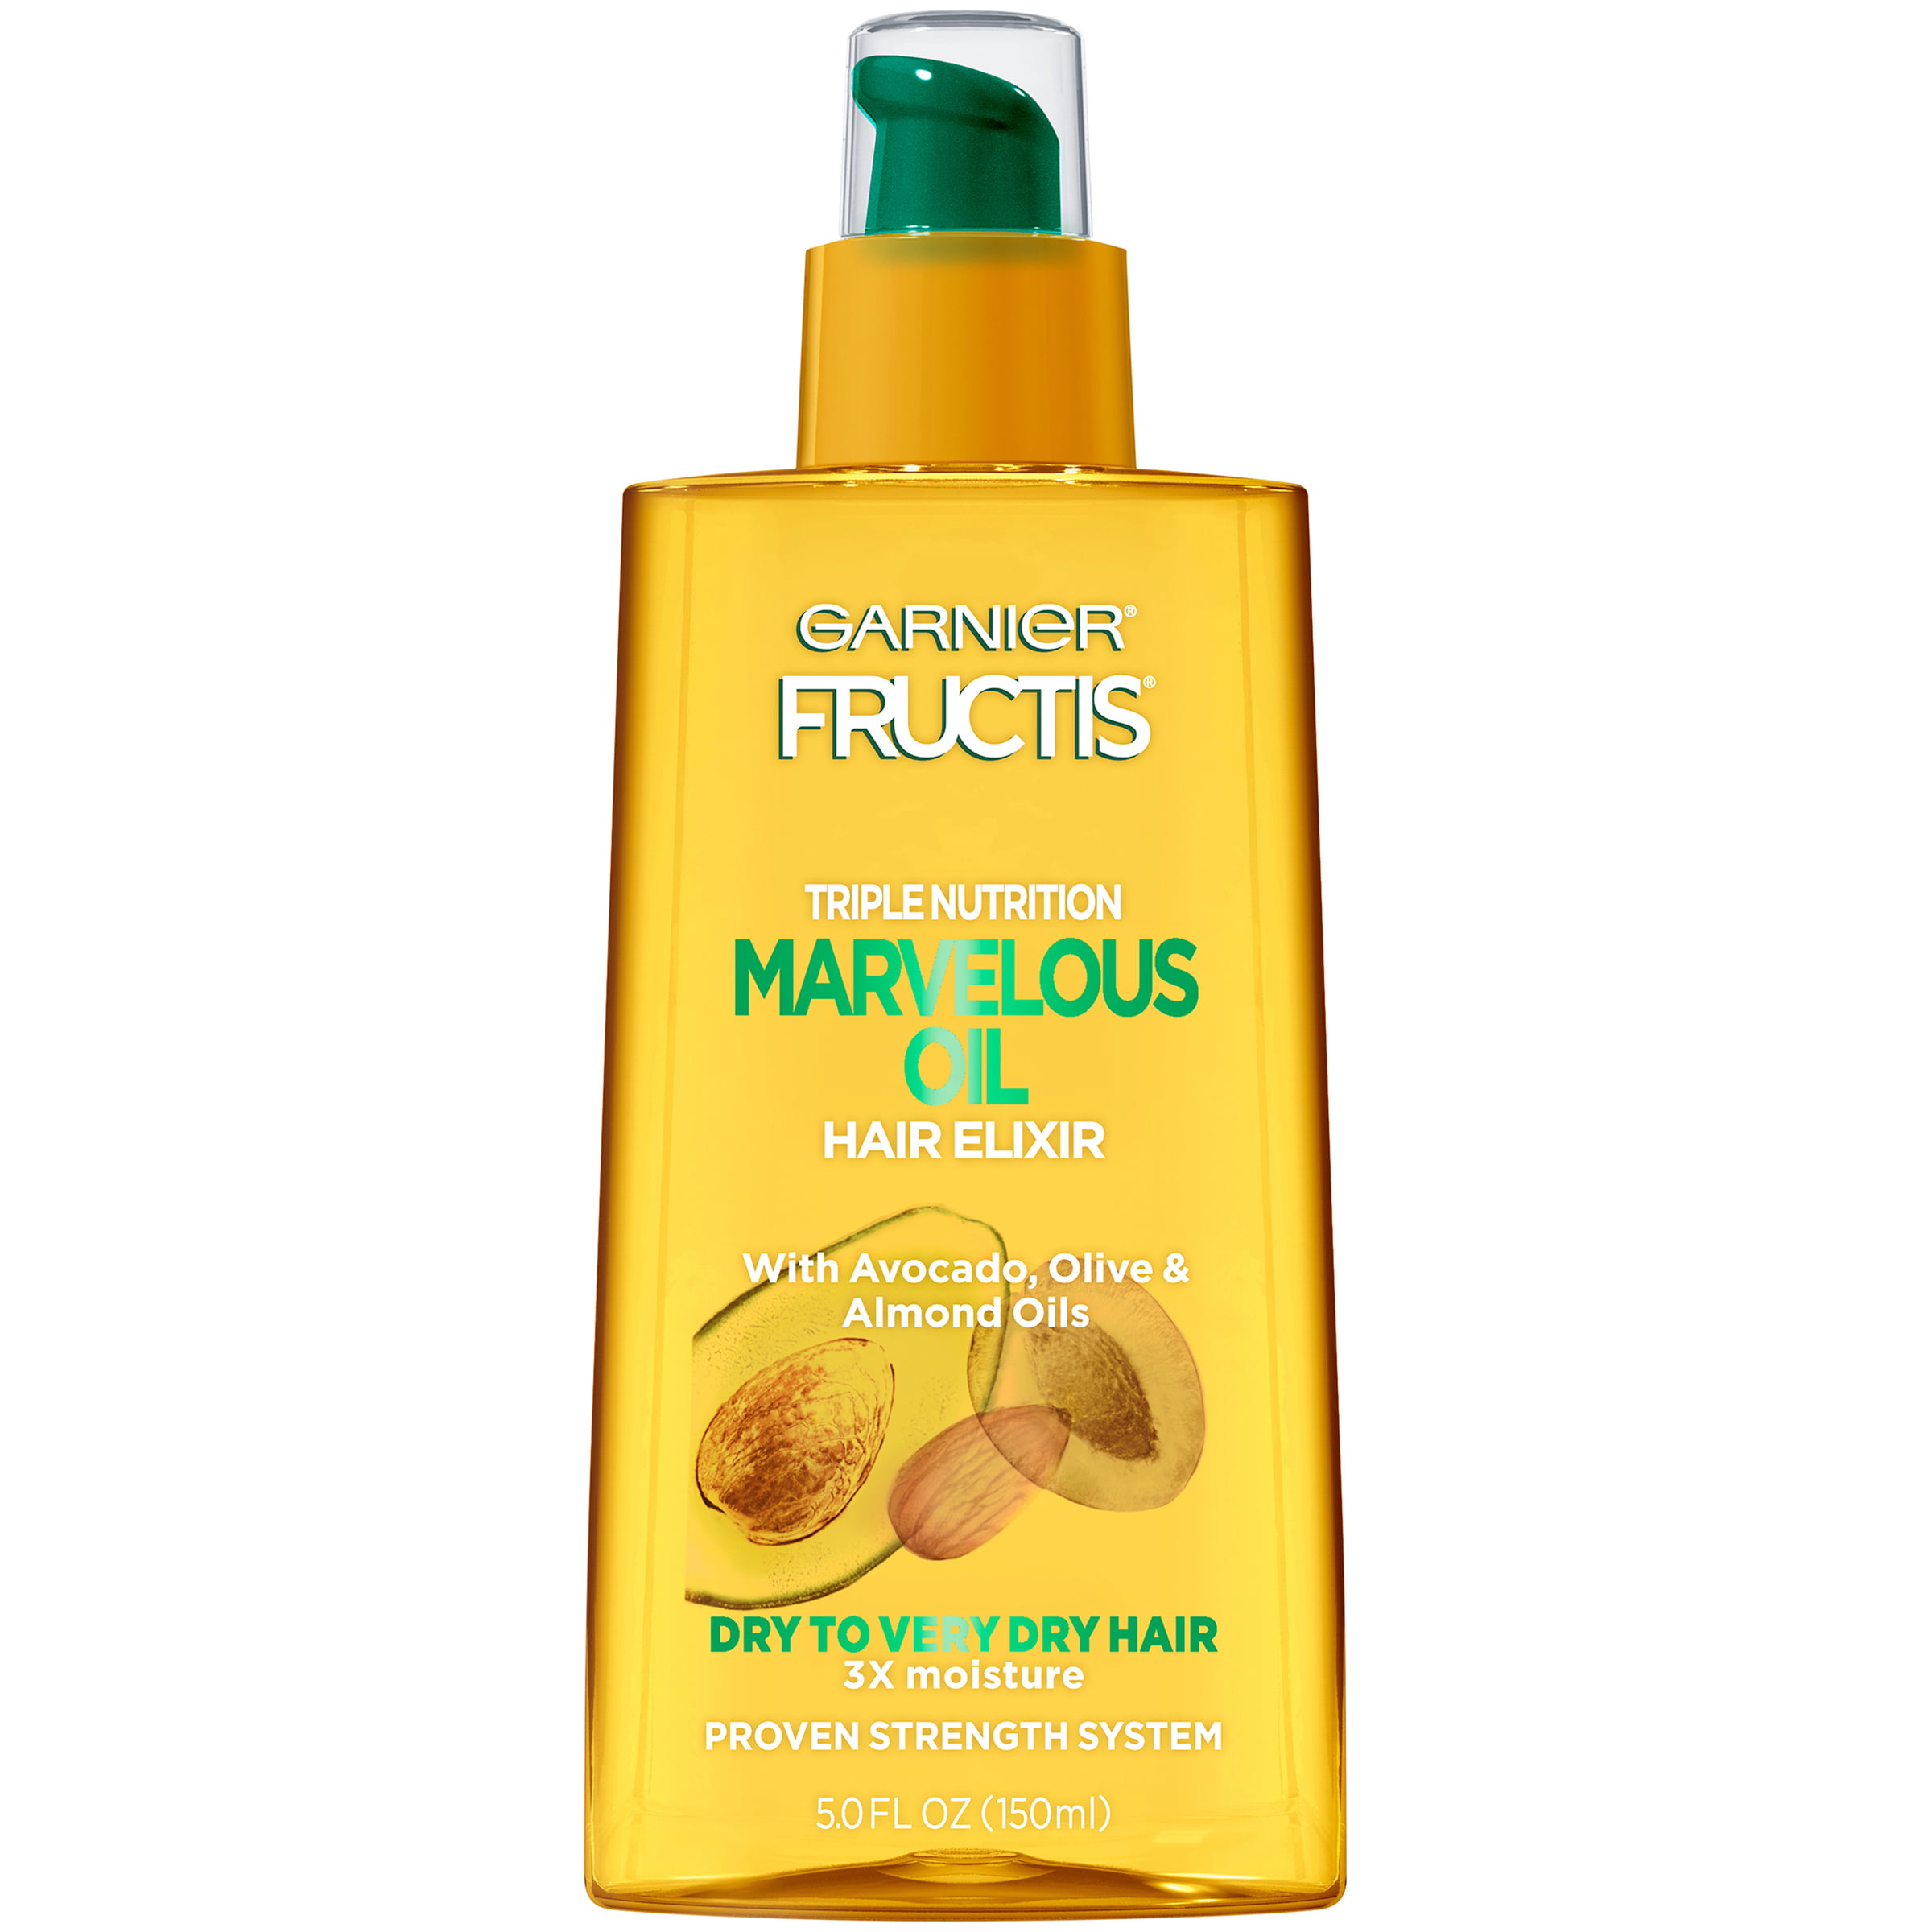 Garnier Fructis Triple Nutrition Marvelous Hair Elixir Oil, 5 fl oz